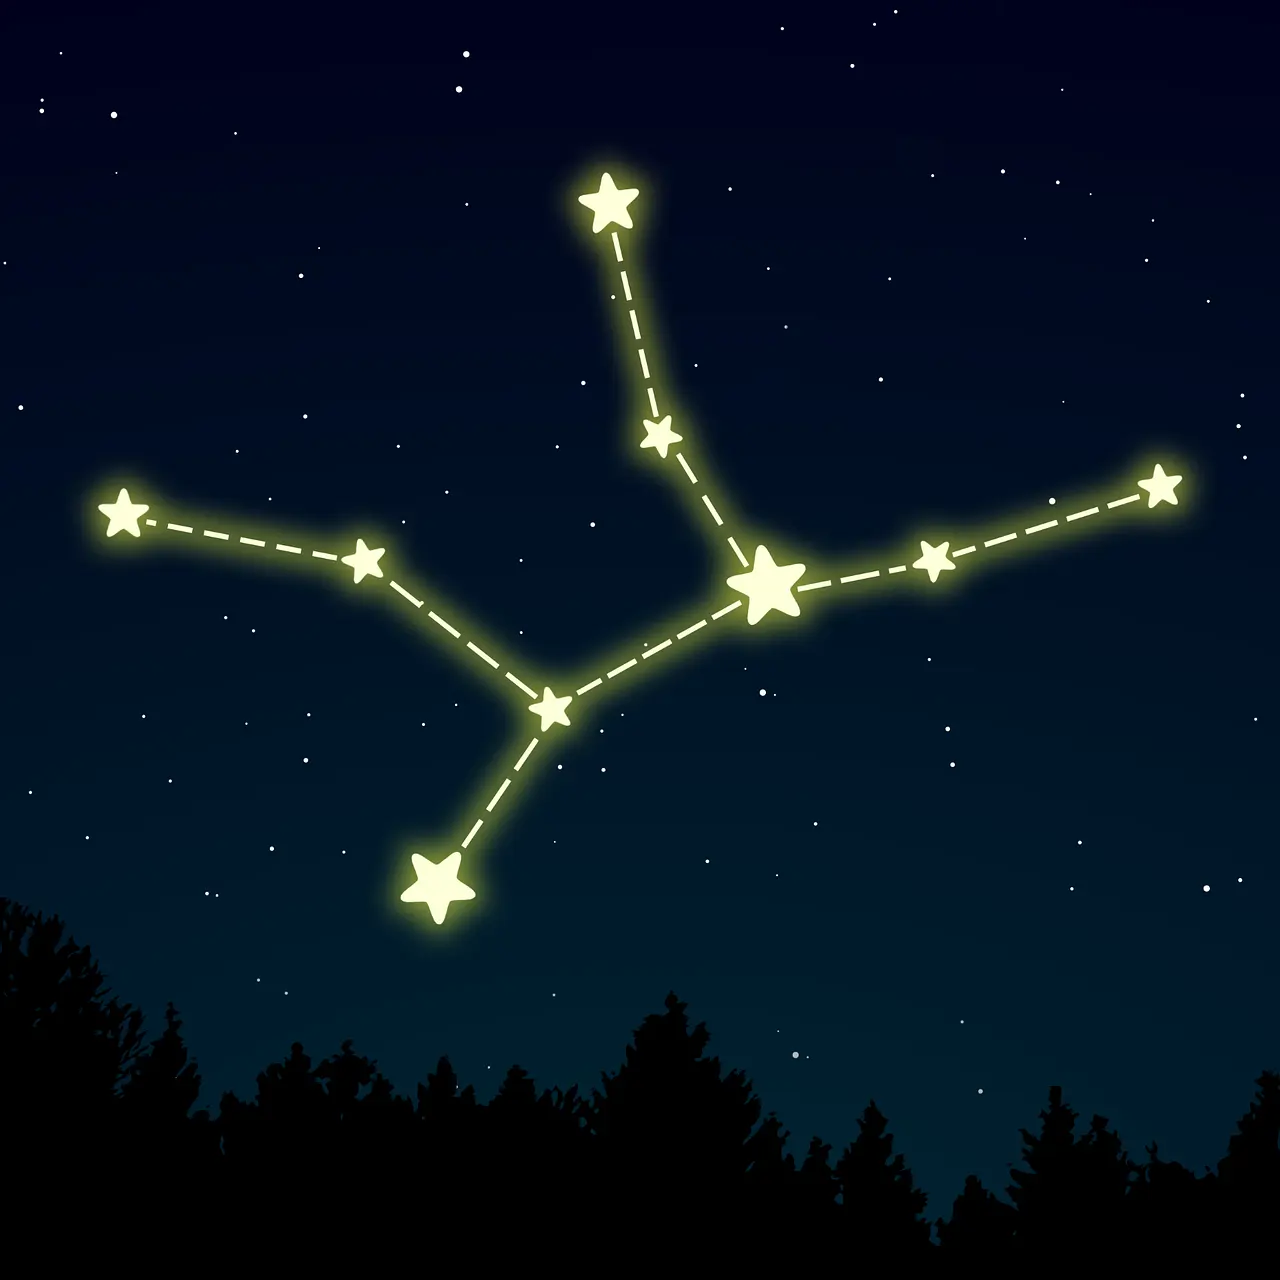 szűz csillagjegy horoszkóp asztrológia jóslás jóslat csillagkép csillag